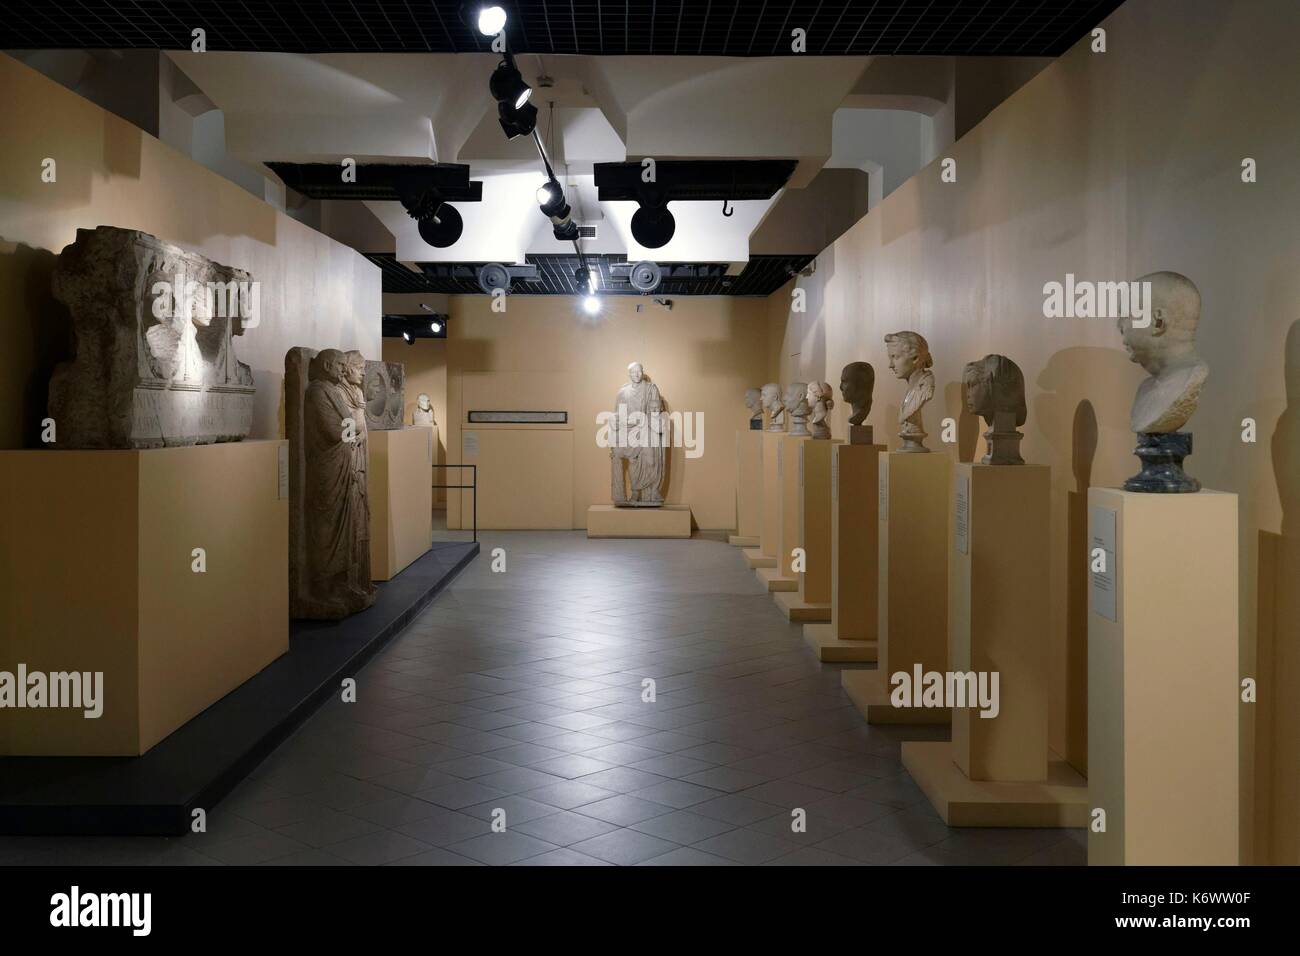 L'Italie, Lazio, Rome, Centrale Montemartini, ancienne centrale électrique thermique, aujourd'hui Musée archéologique Banque D'Images